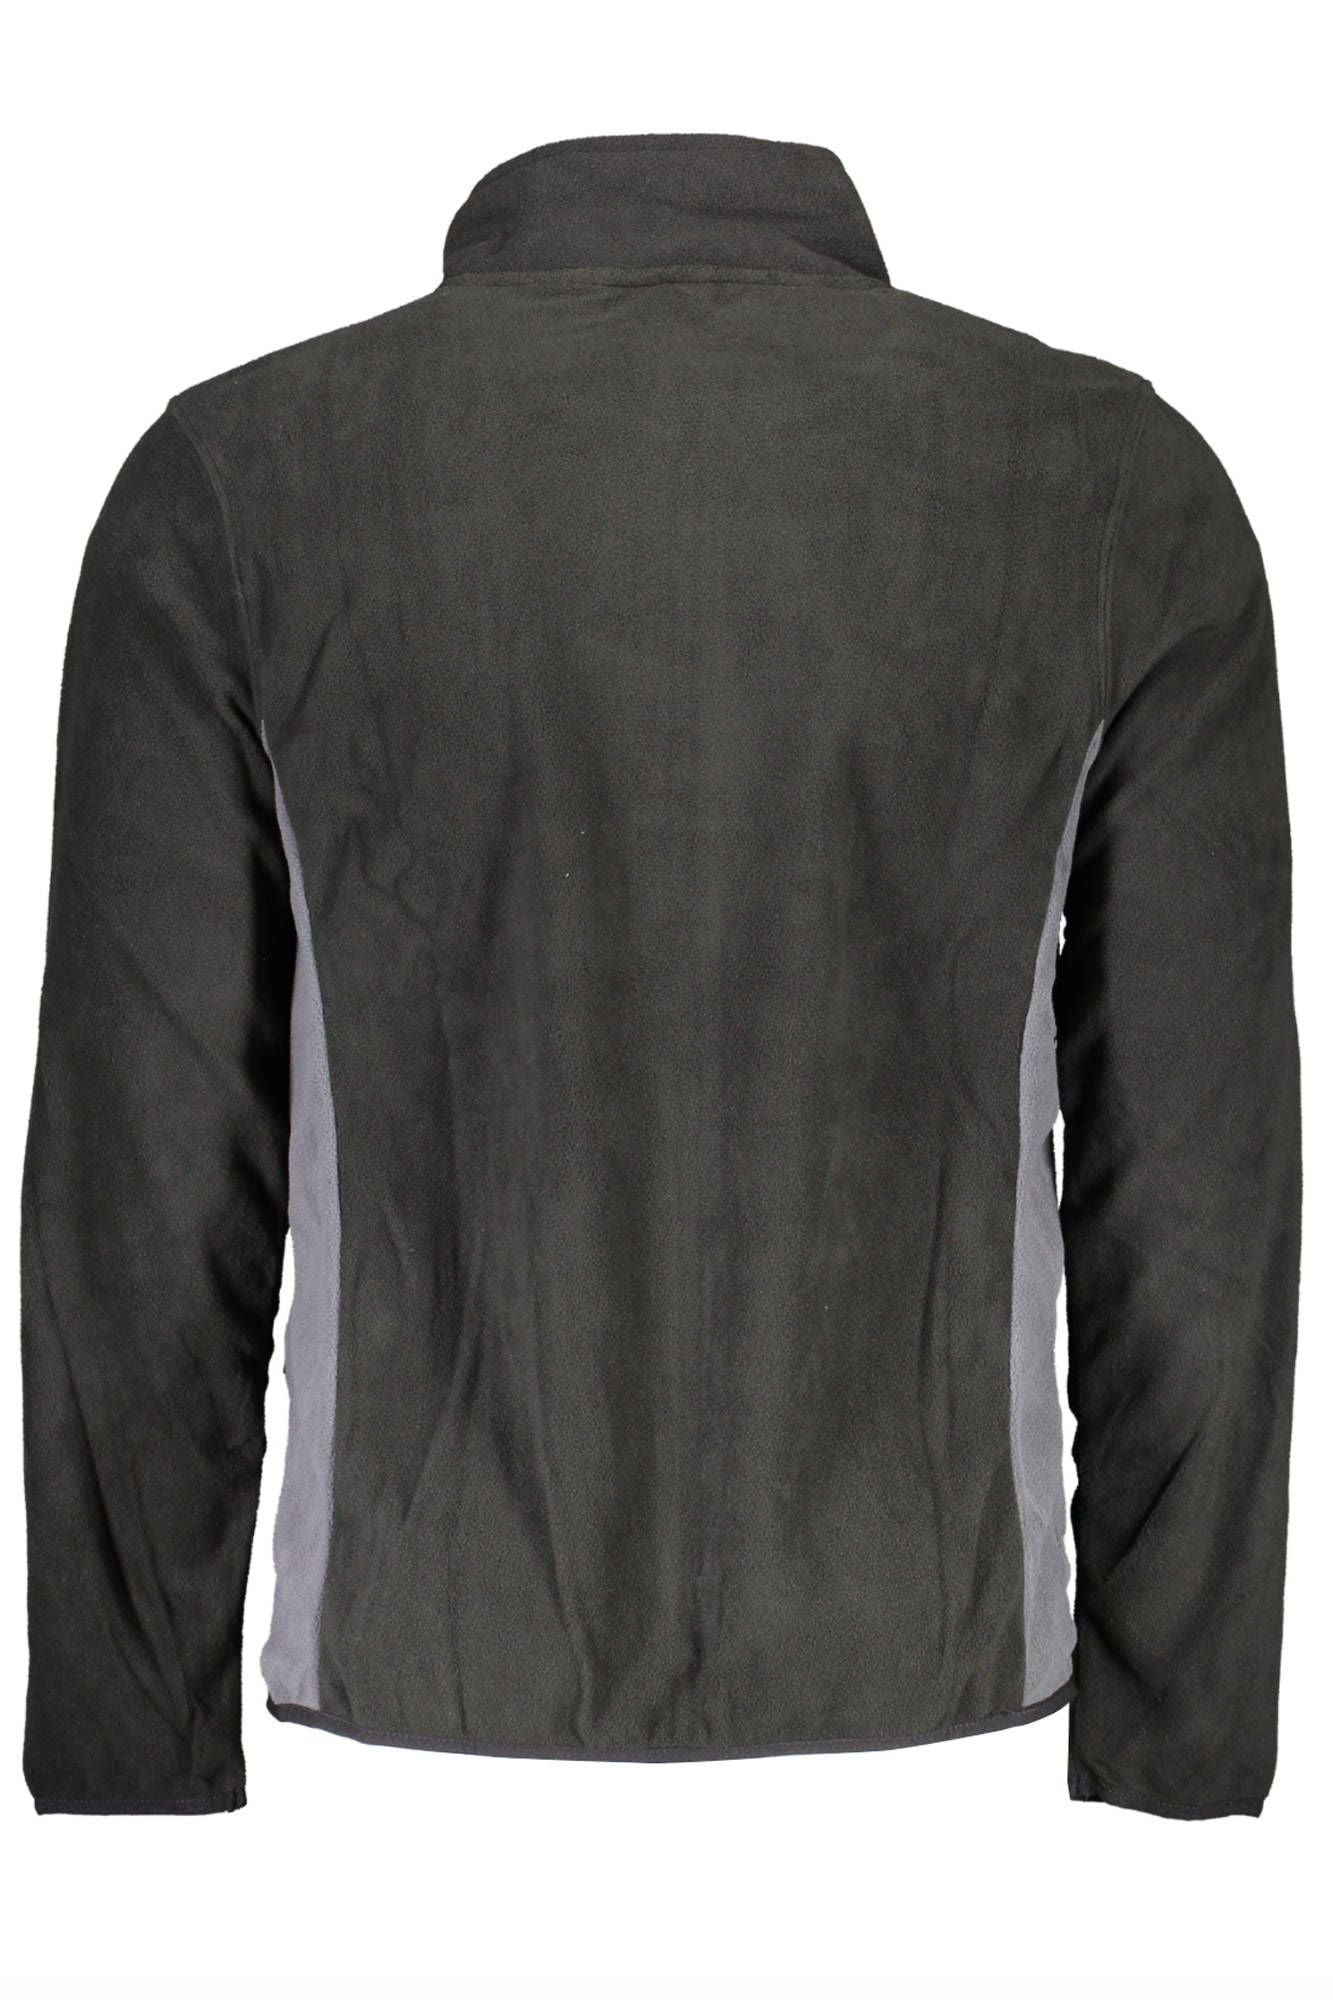 Norway 1963 Sleek Black Long-Sleeved Zip Sweatshirt